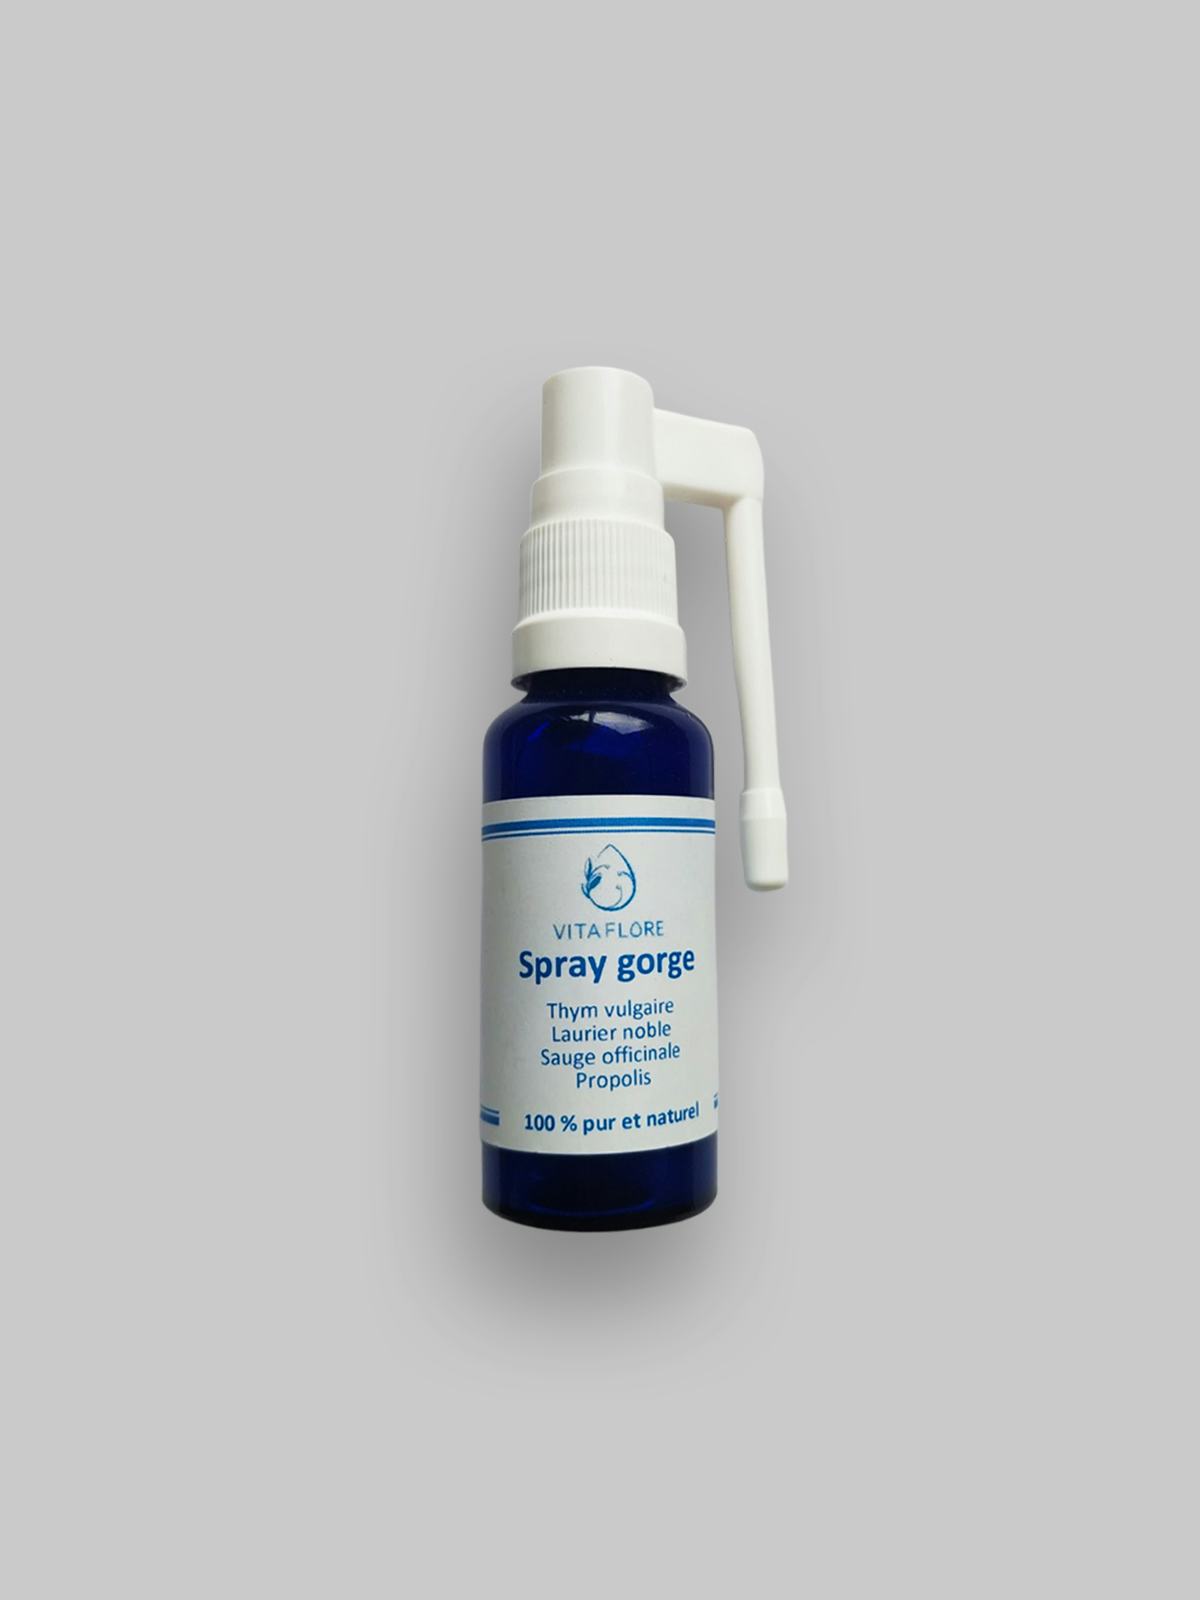 Spray gorge, prodotto artigianale per la vendita diretta in Svizzera